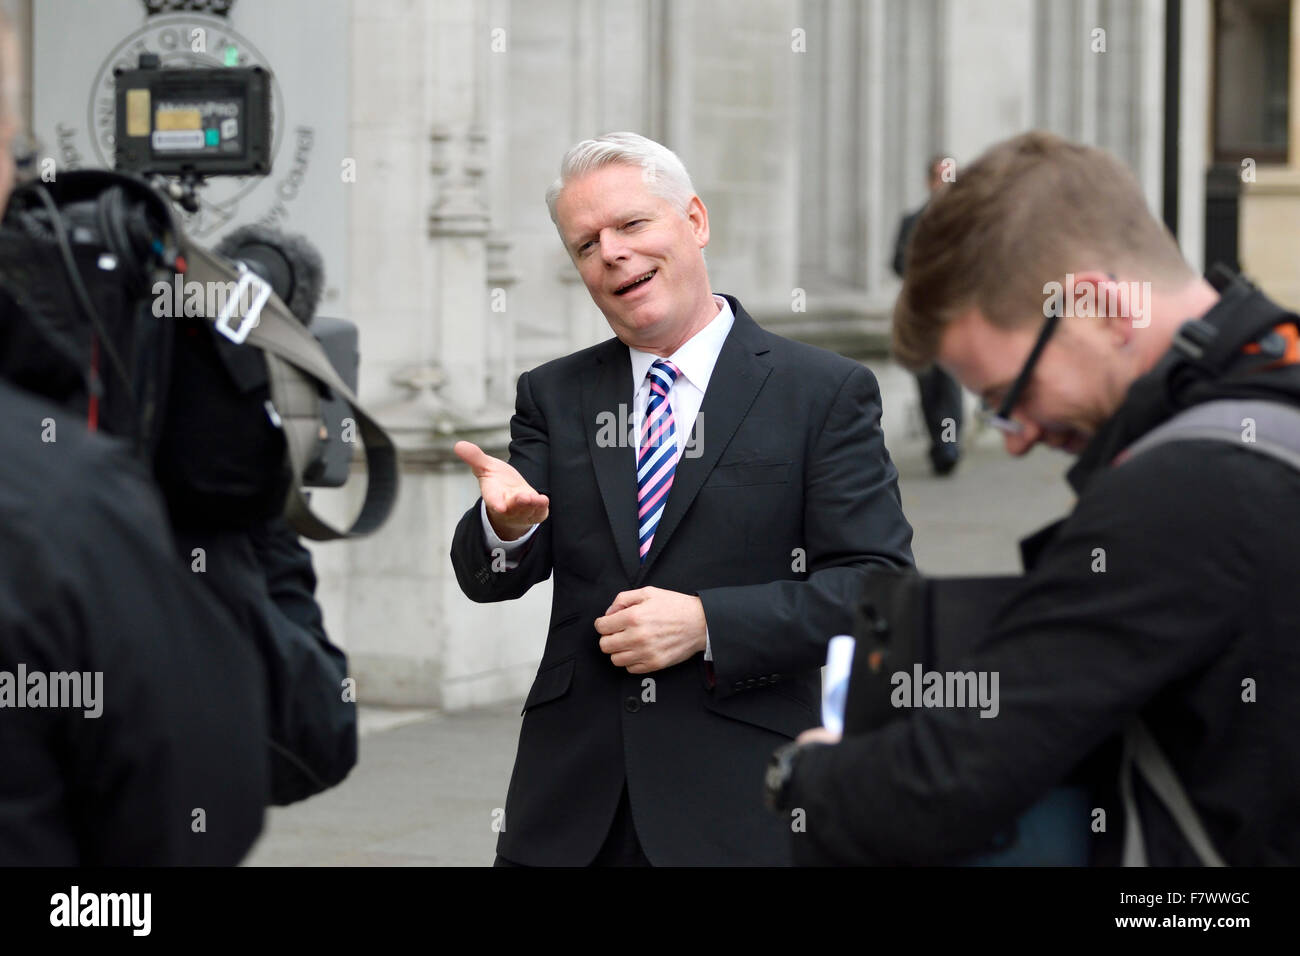 Clive Mason, taub britische TV-Moderatorin, Gebärdensprache, Kamera in eine äußere Ausstrahlung in London, 2015 Stockfoto